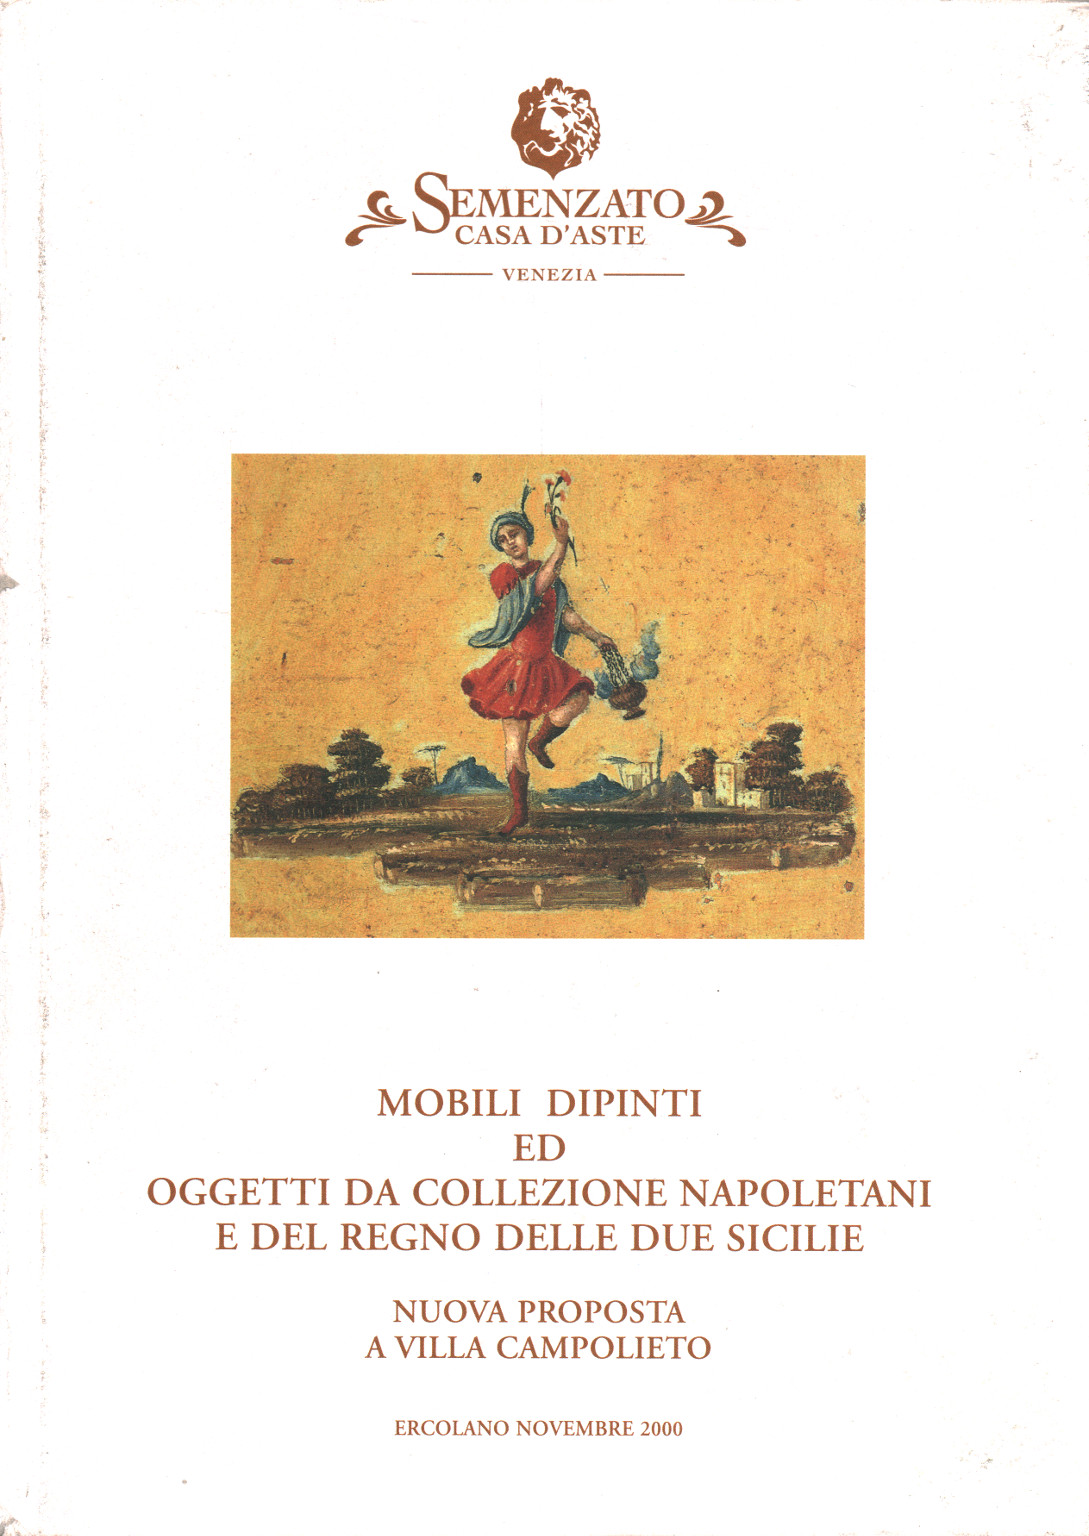 Mobili dipinti ed oggetti da collezione napoletani, AA.VV